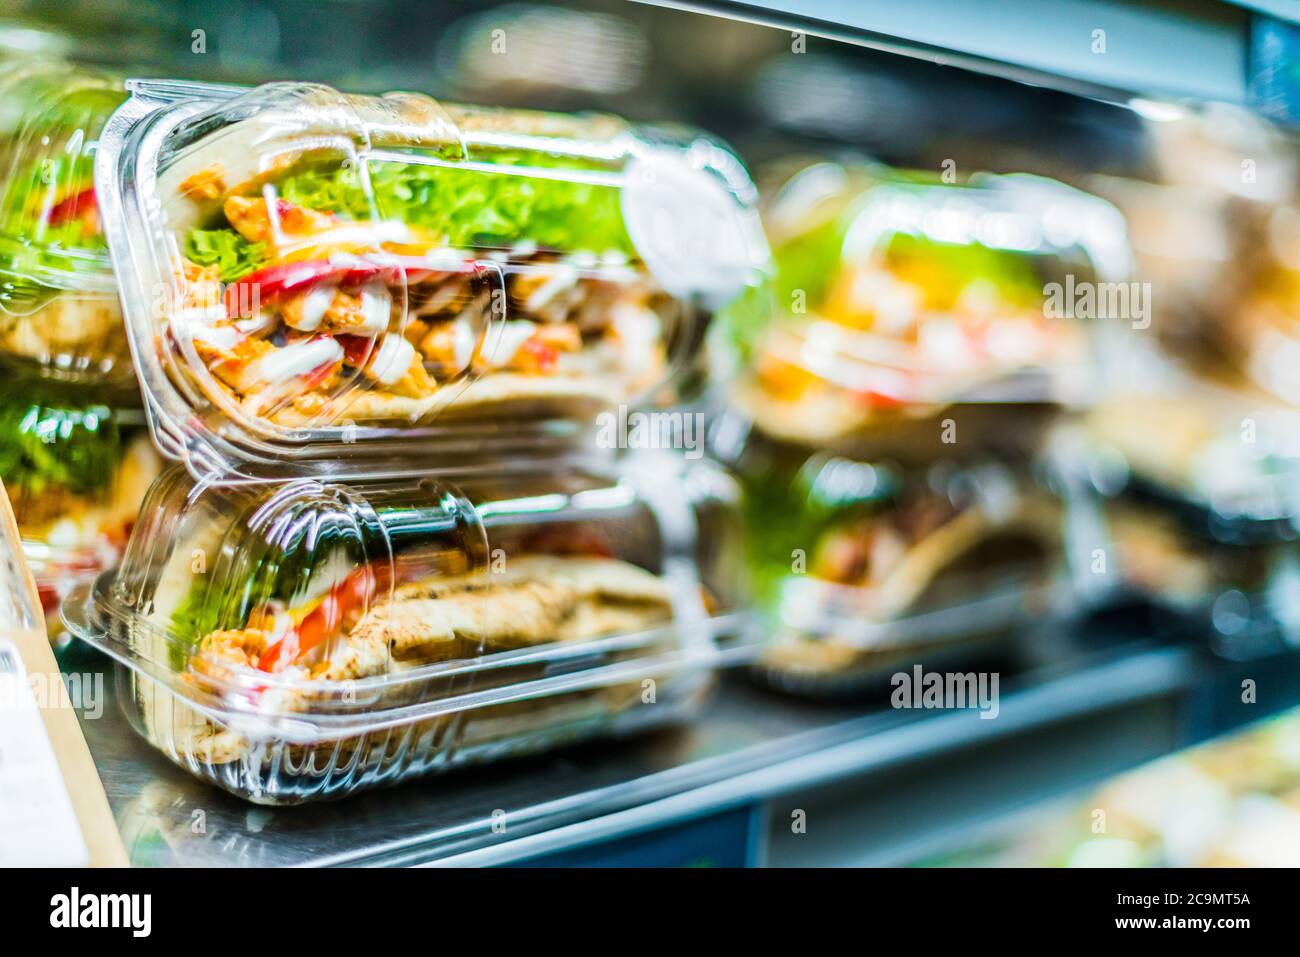 Chili Chicken mit Pita, vorgepackte Sandwiches in einem handelsüblichen Kühlschrank Stockfoto